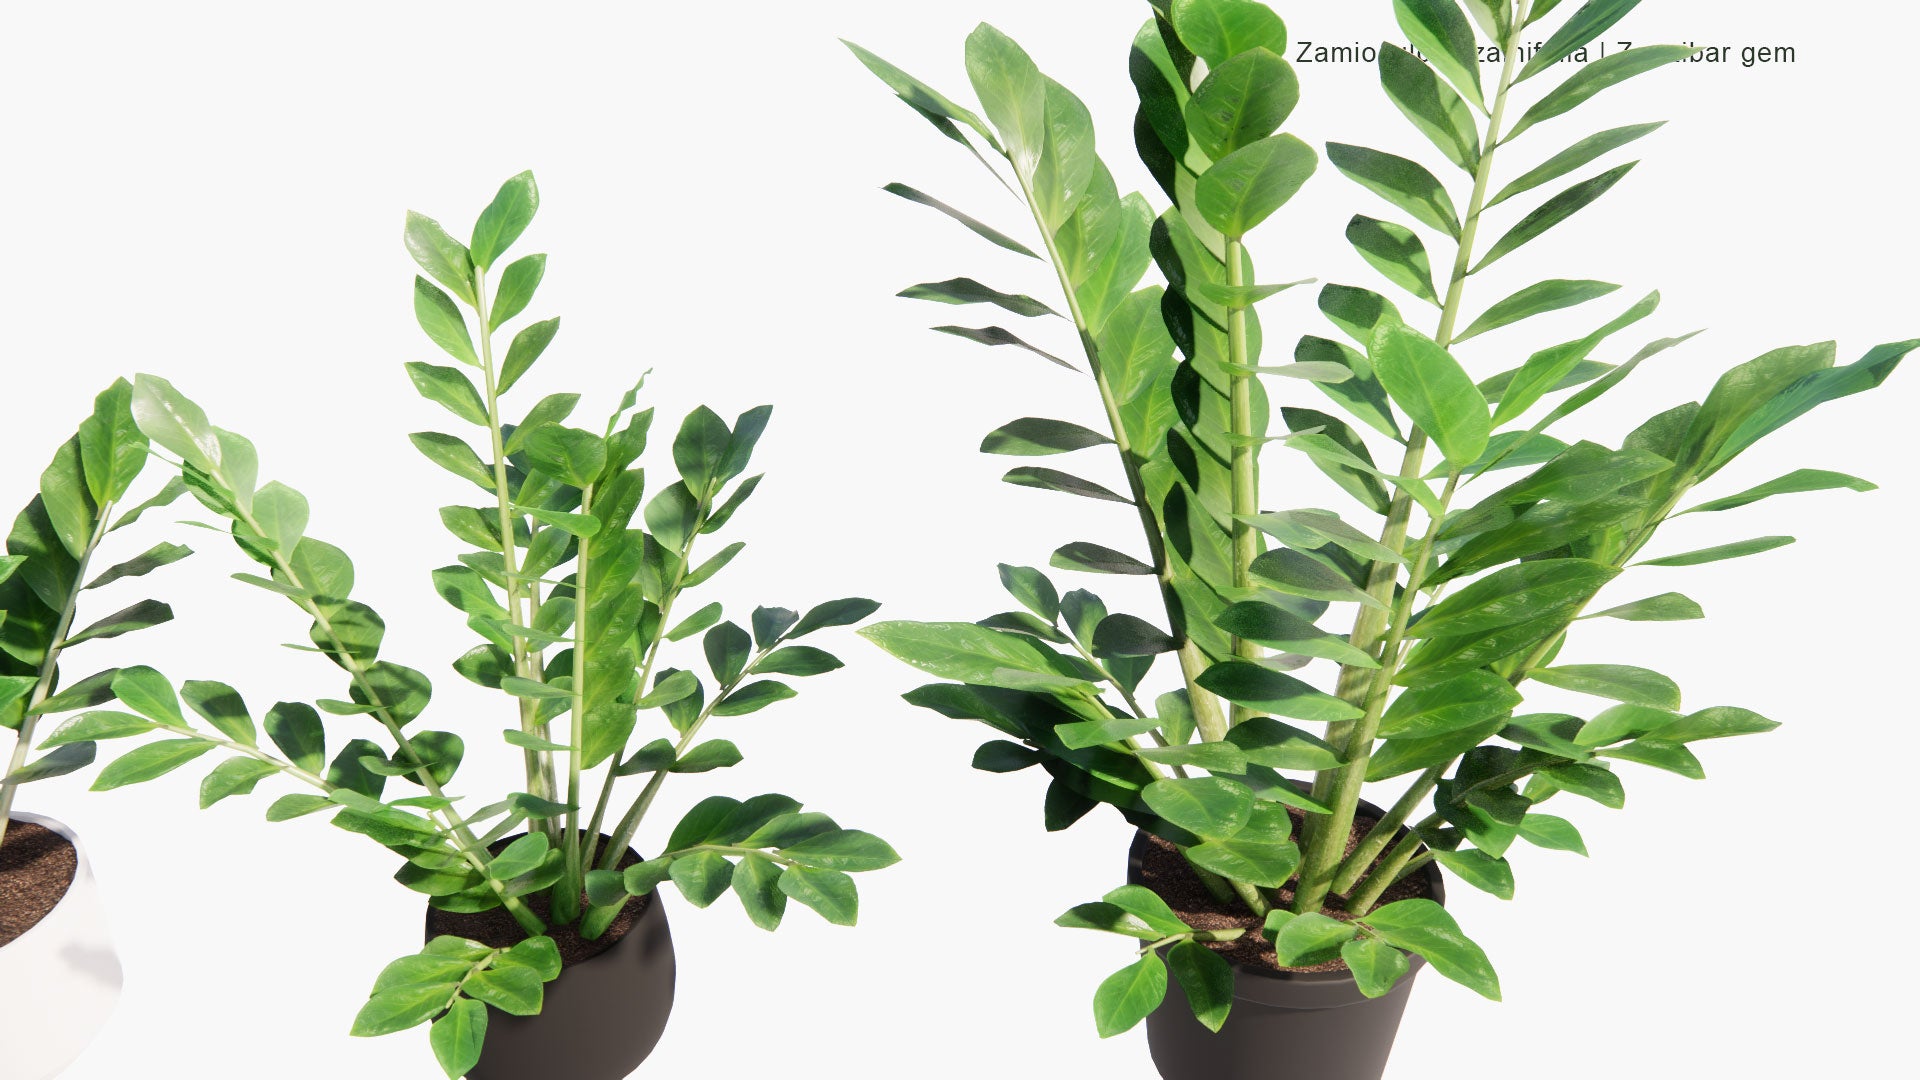 Low Poly Zamioculcas Zamiifolia - Zanzibar Gem, ZZ Plant, Zuzu Plant, Aroid Palm, Eternity Plant, Emerald Palm (3D Model)